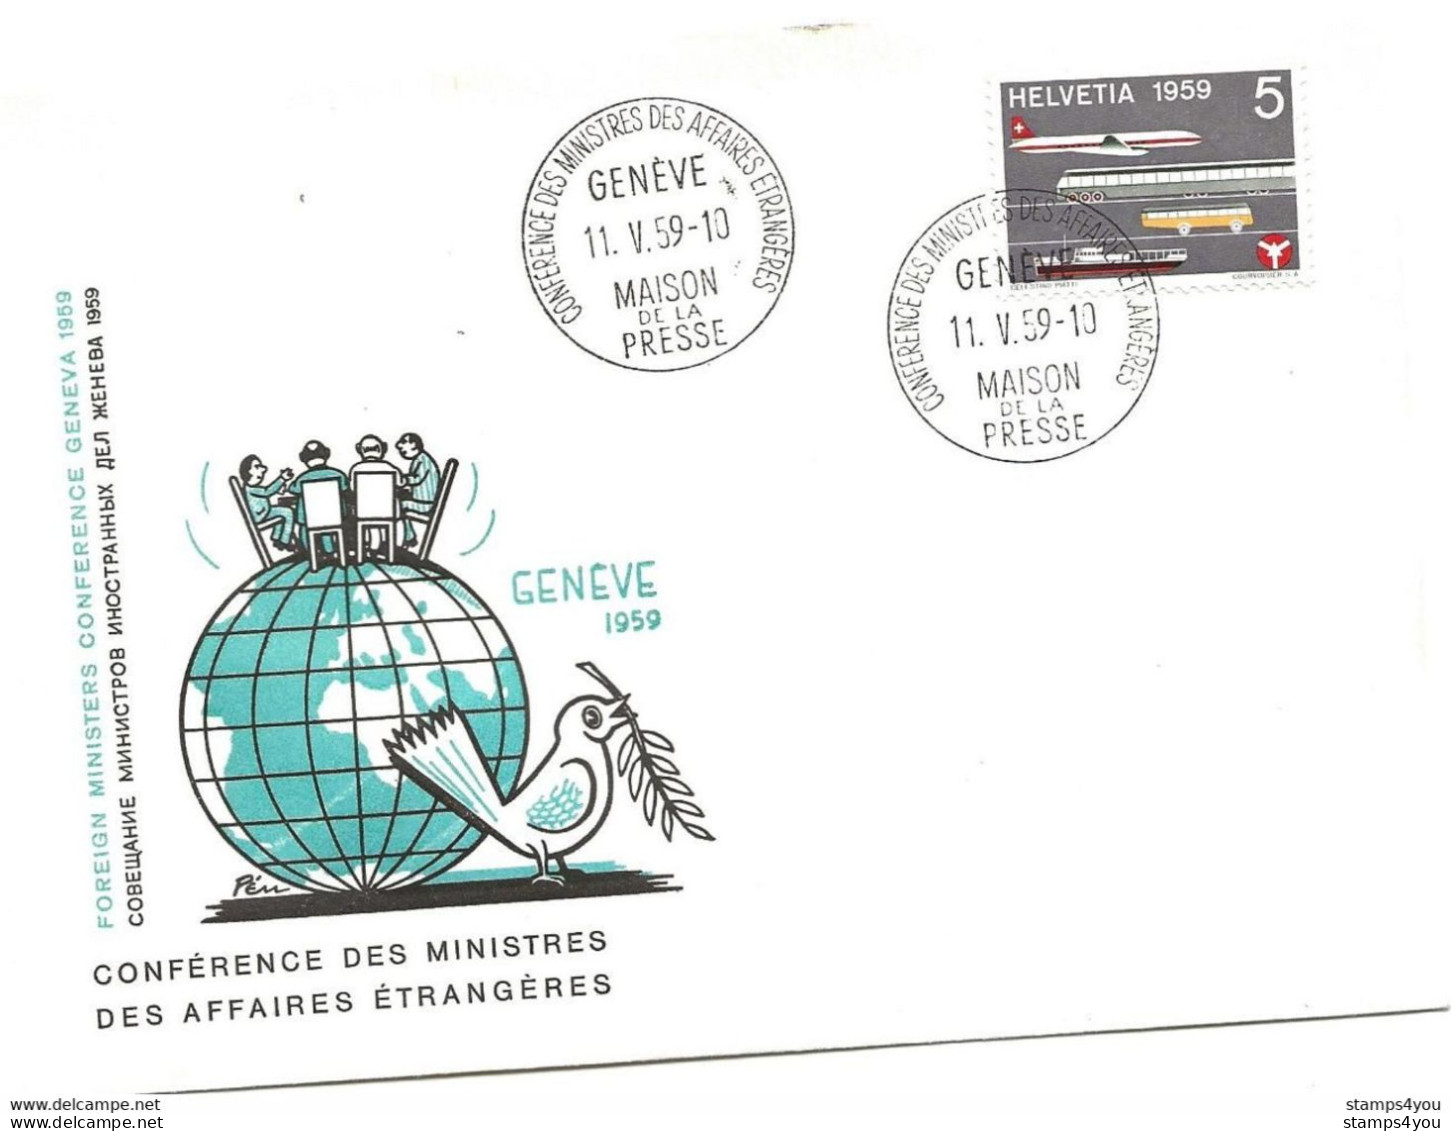 125 - 35 - Enveloppe "PEN" Avec Oblit Spéciale Genève Maison Presse - Conférence Ministres Affaires étrangères 1959 - Poststempel